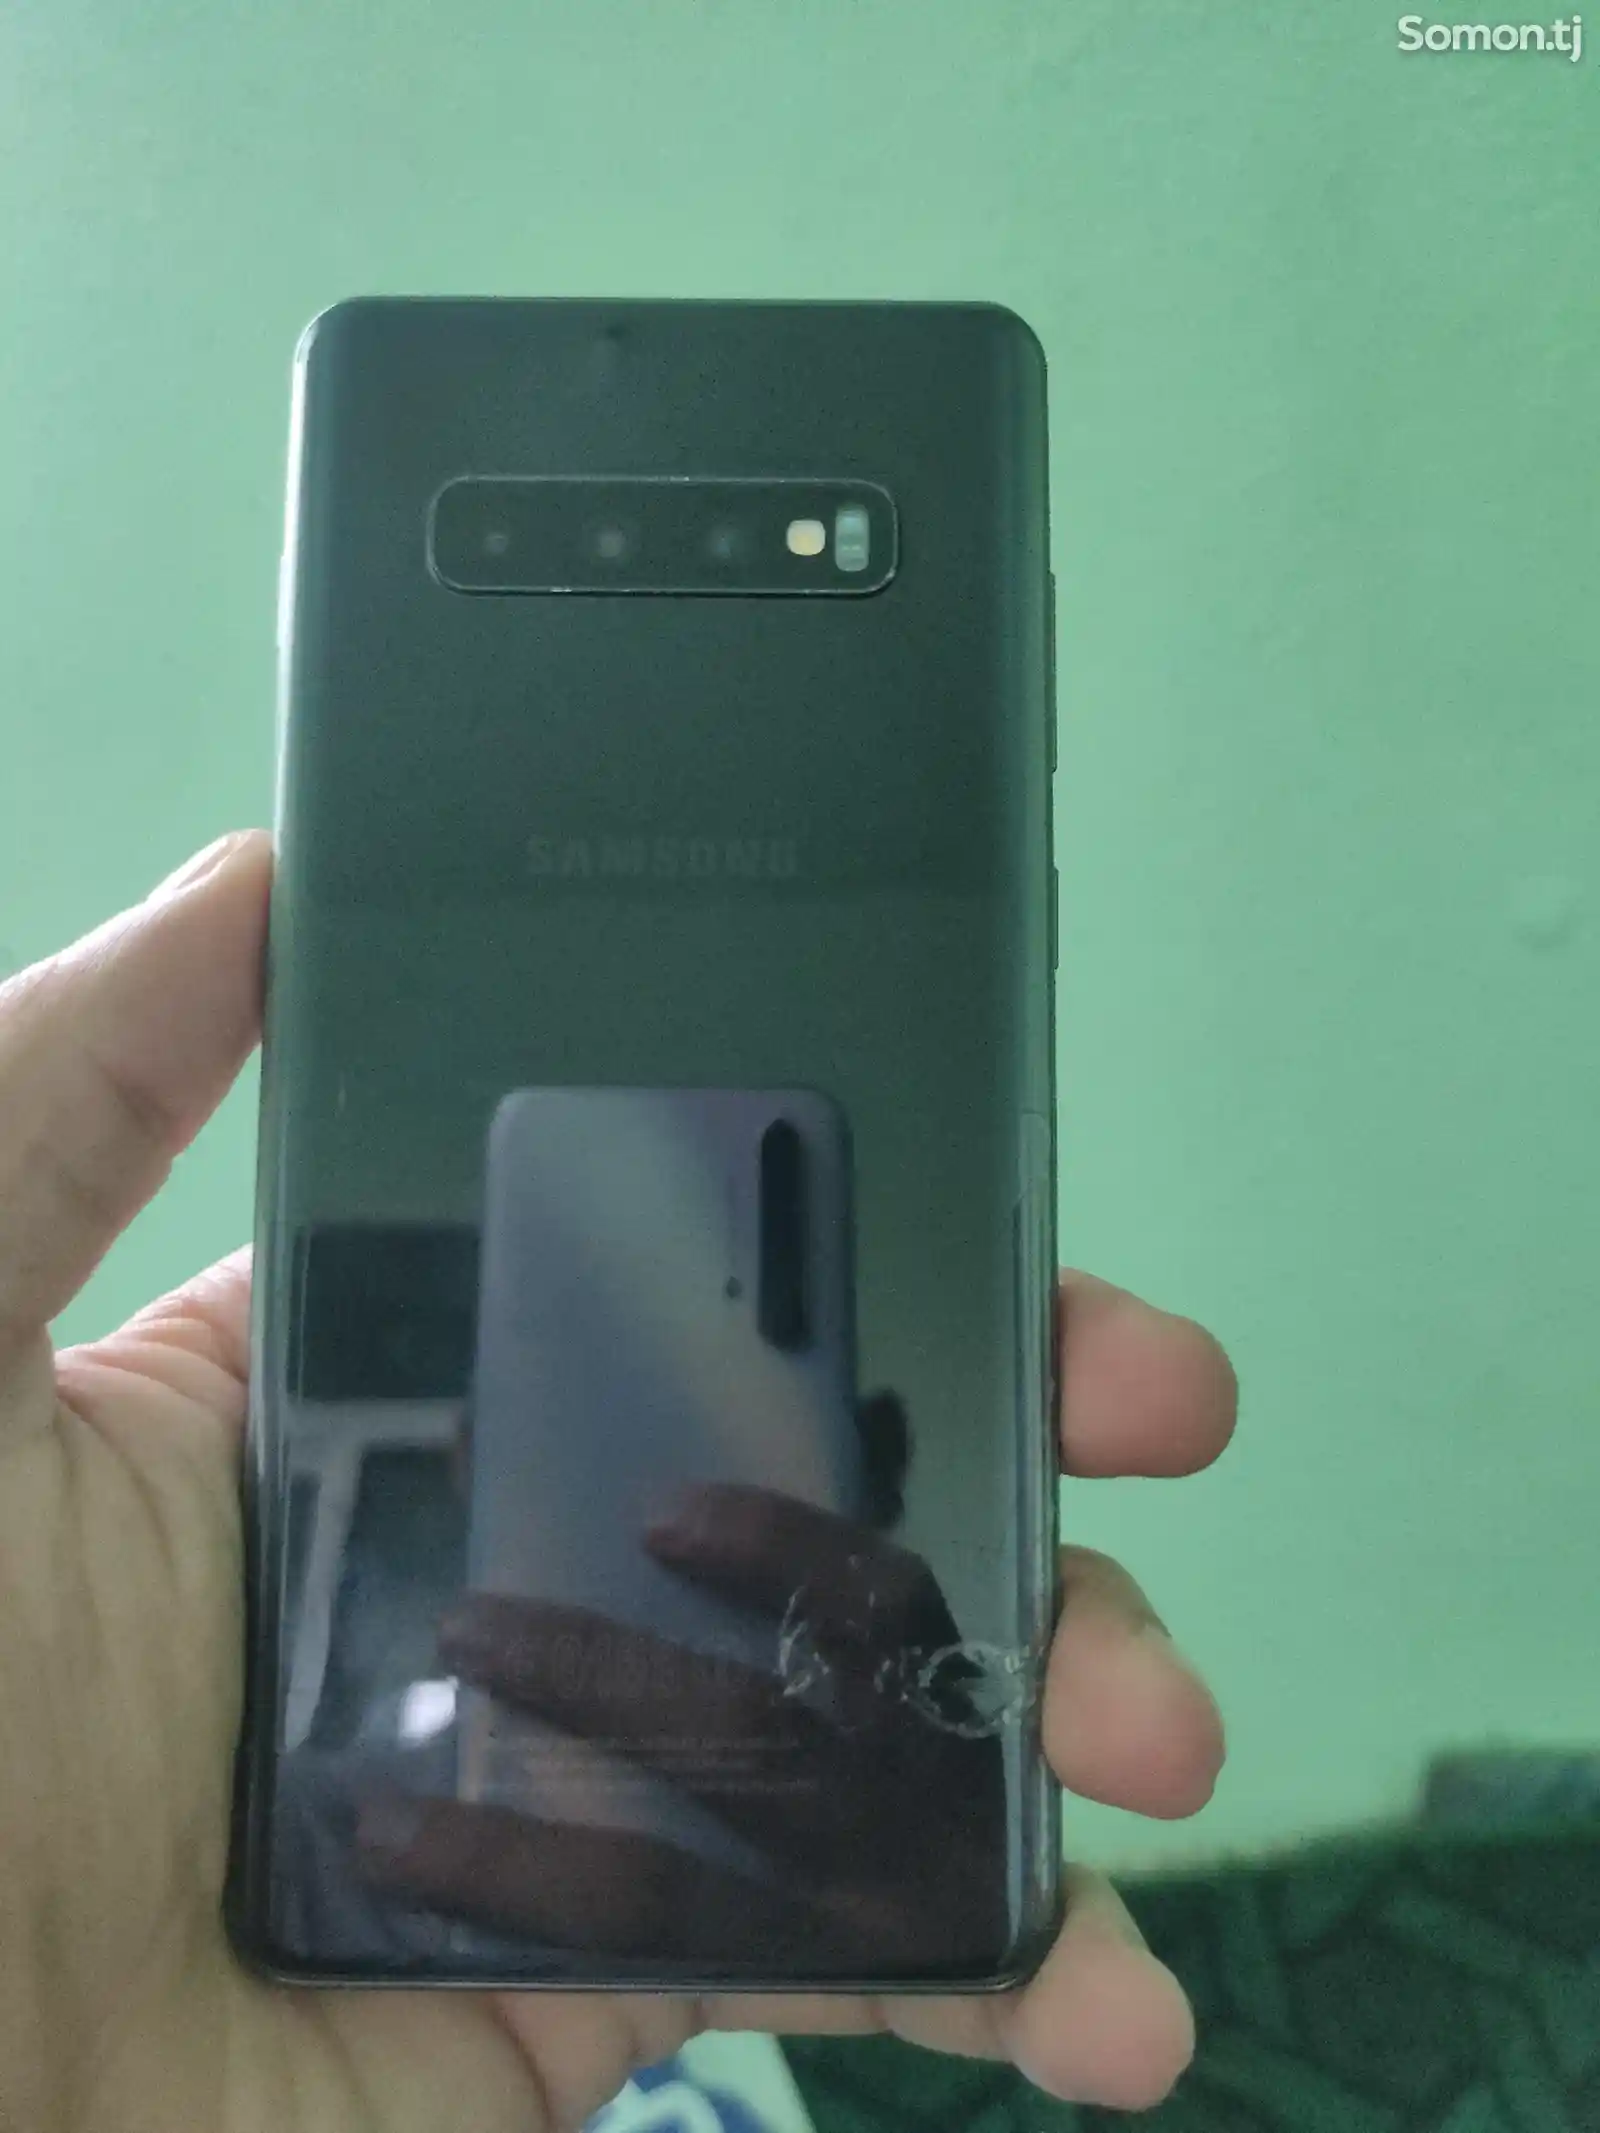 Samsung Galaxy S10+-2